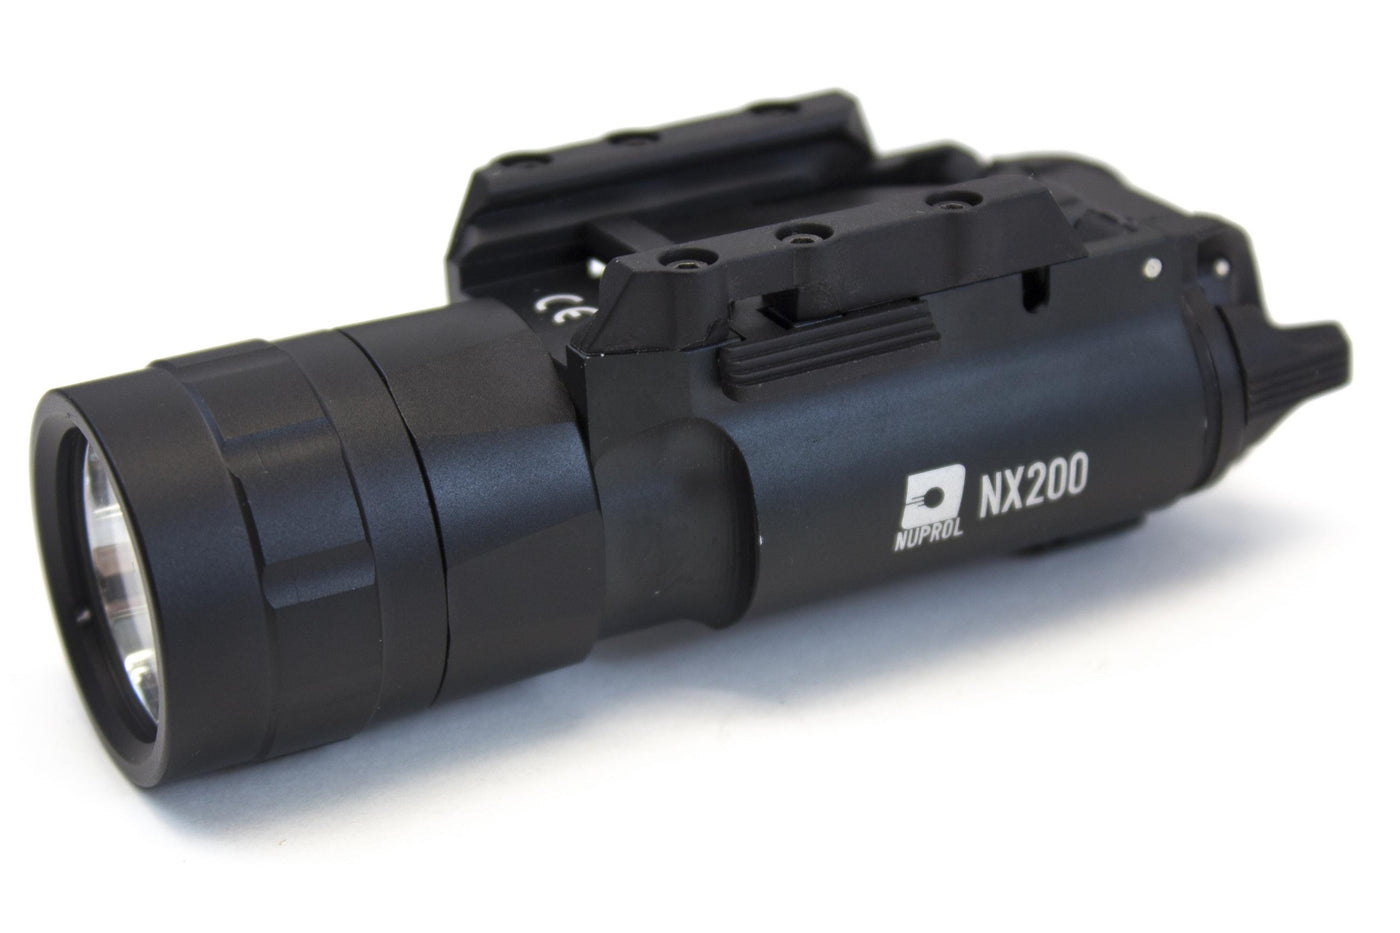 Nuprol NX200 Pistol Torch